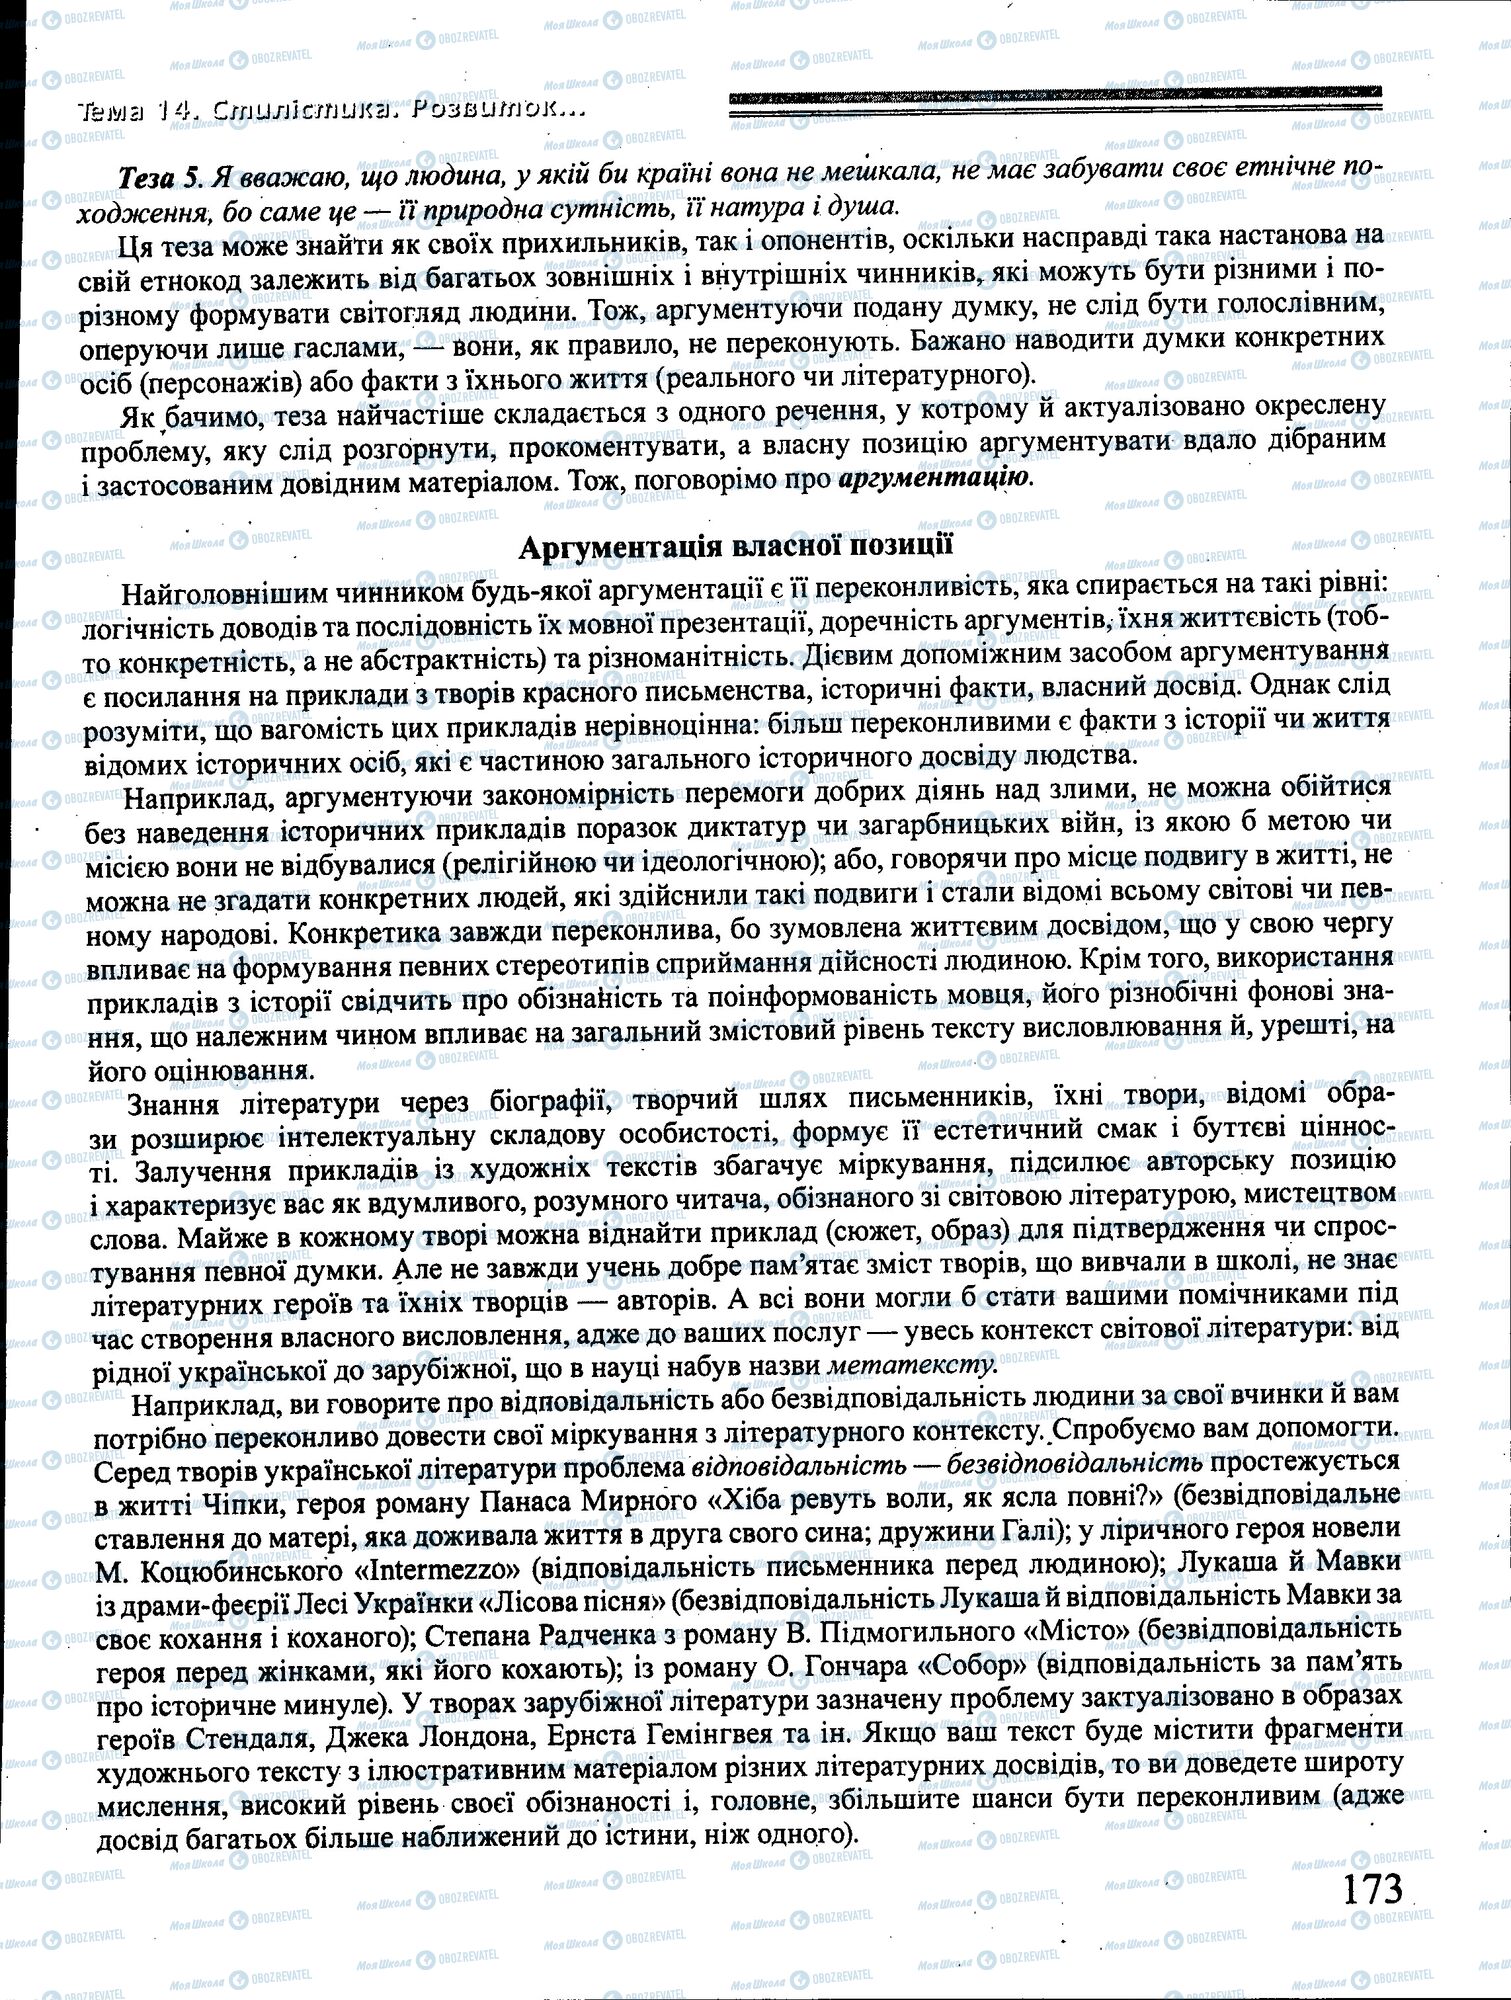 ДПА Укр мова 4 класс страница 173